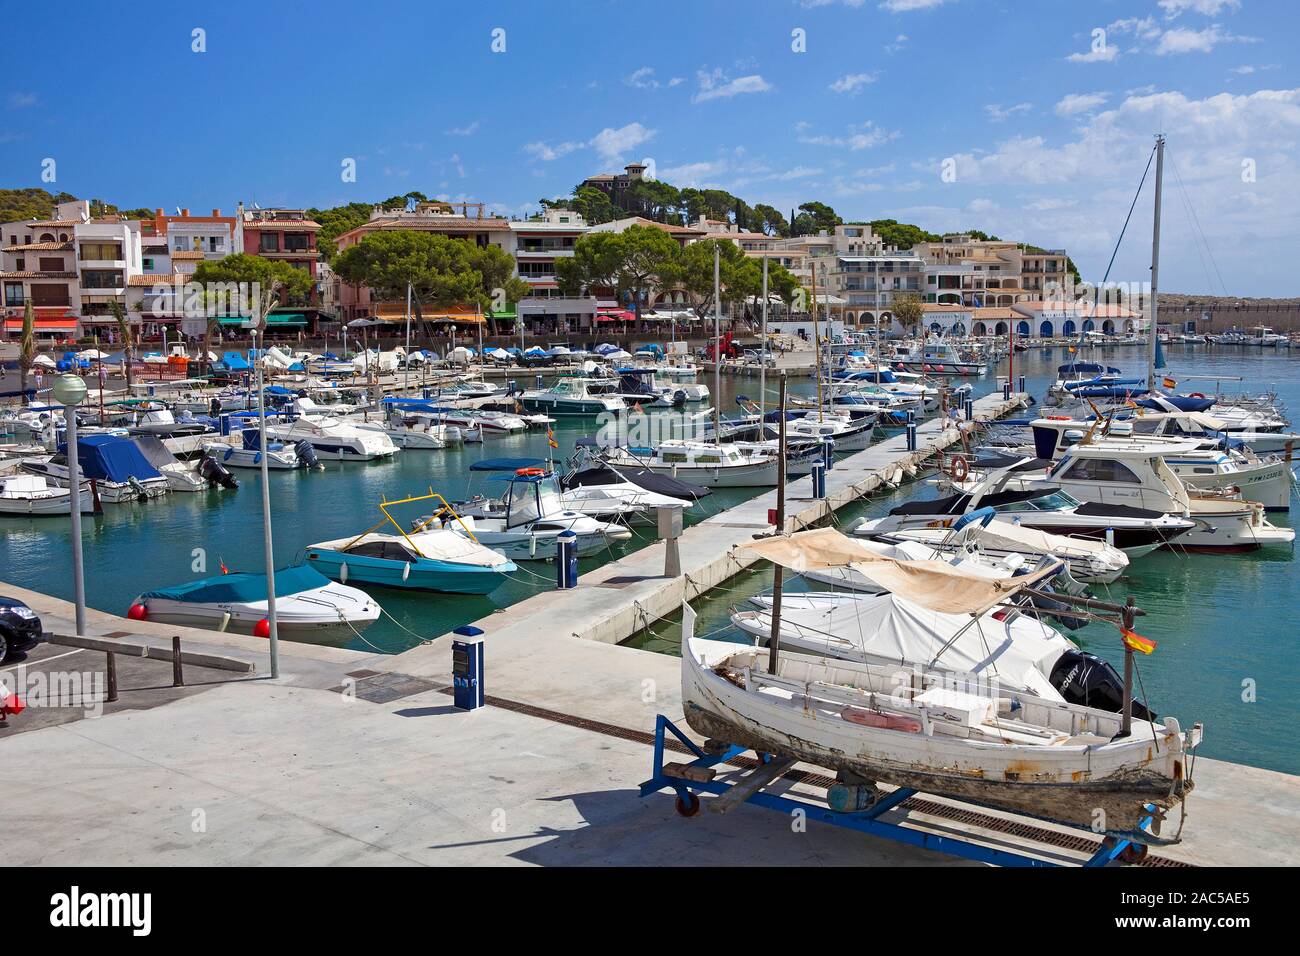 Scène de port, bateaux dans le port de Cala Ratjada, Majorque, Iles Baléares, Espagne Banque D'Images